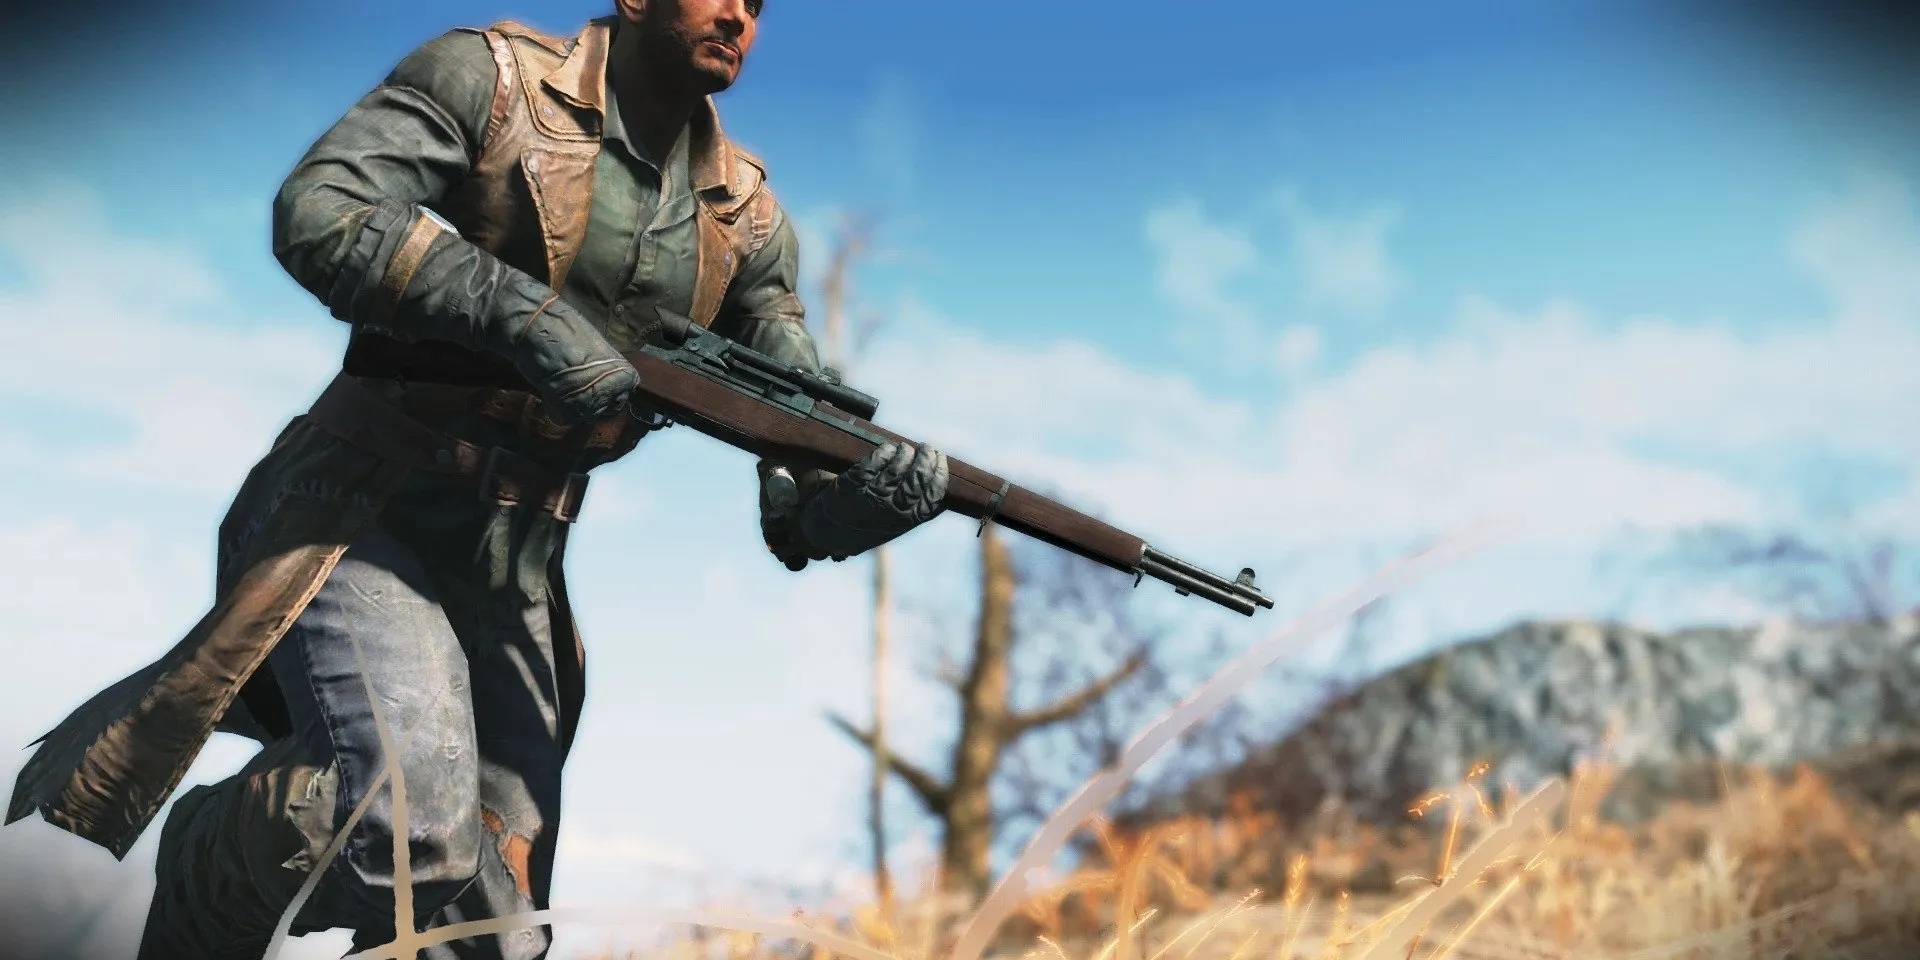 Fallout 4 M1 Garand - A WWII Classic